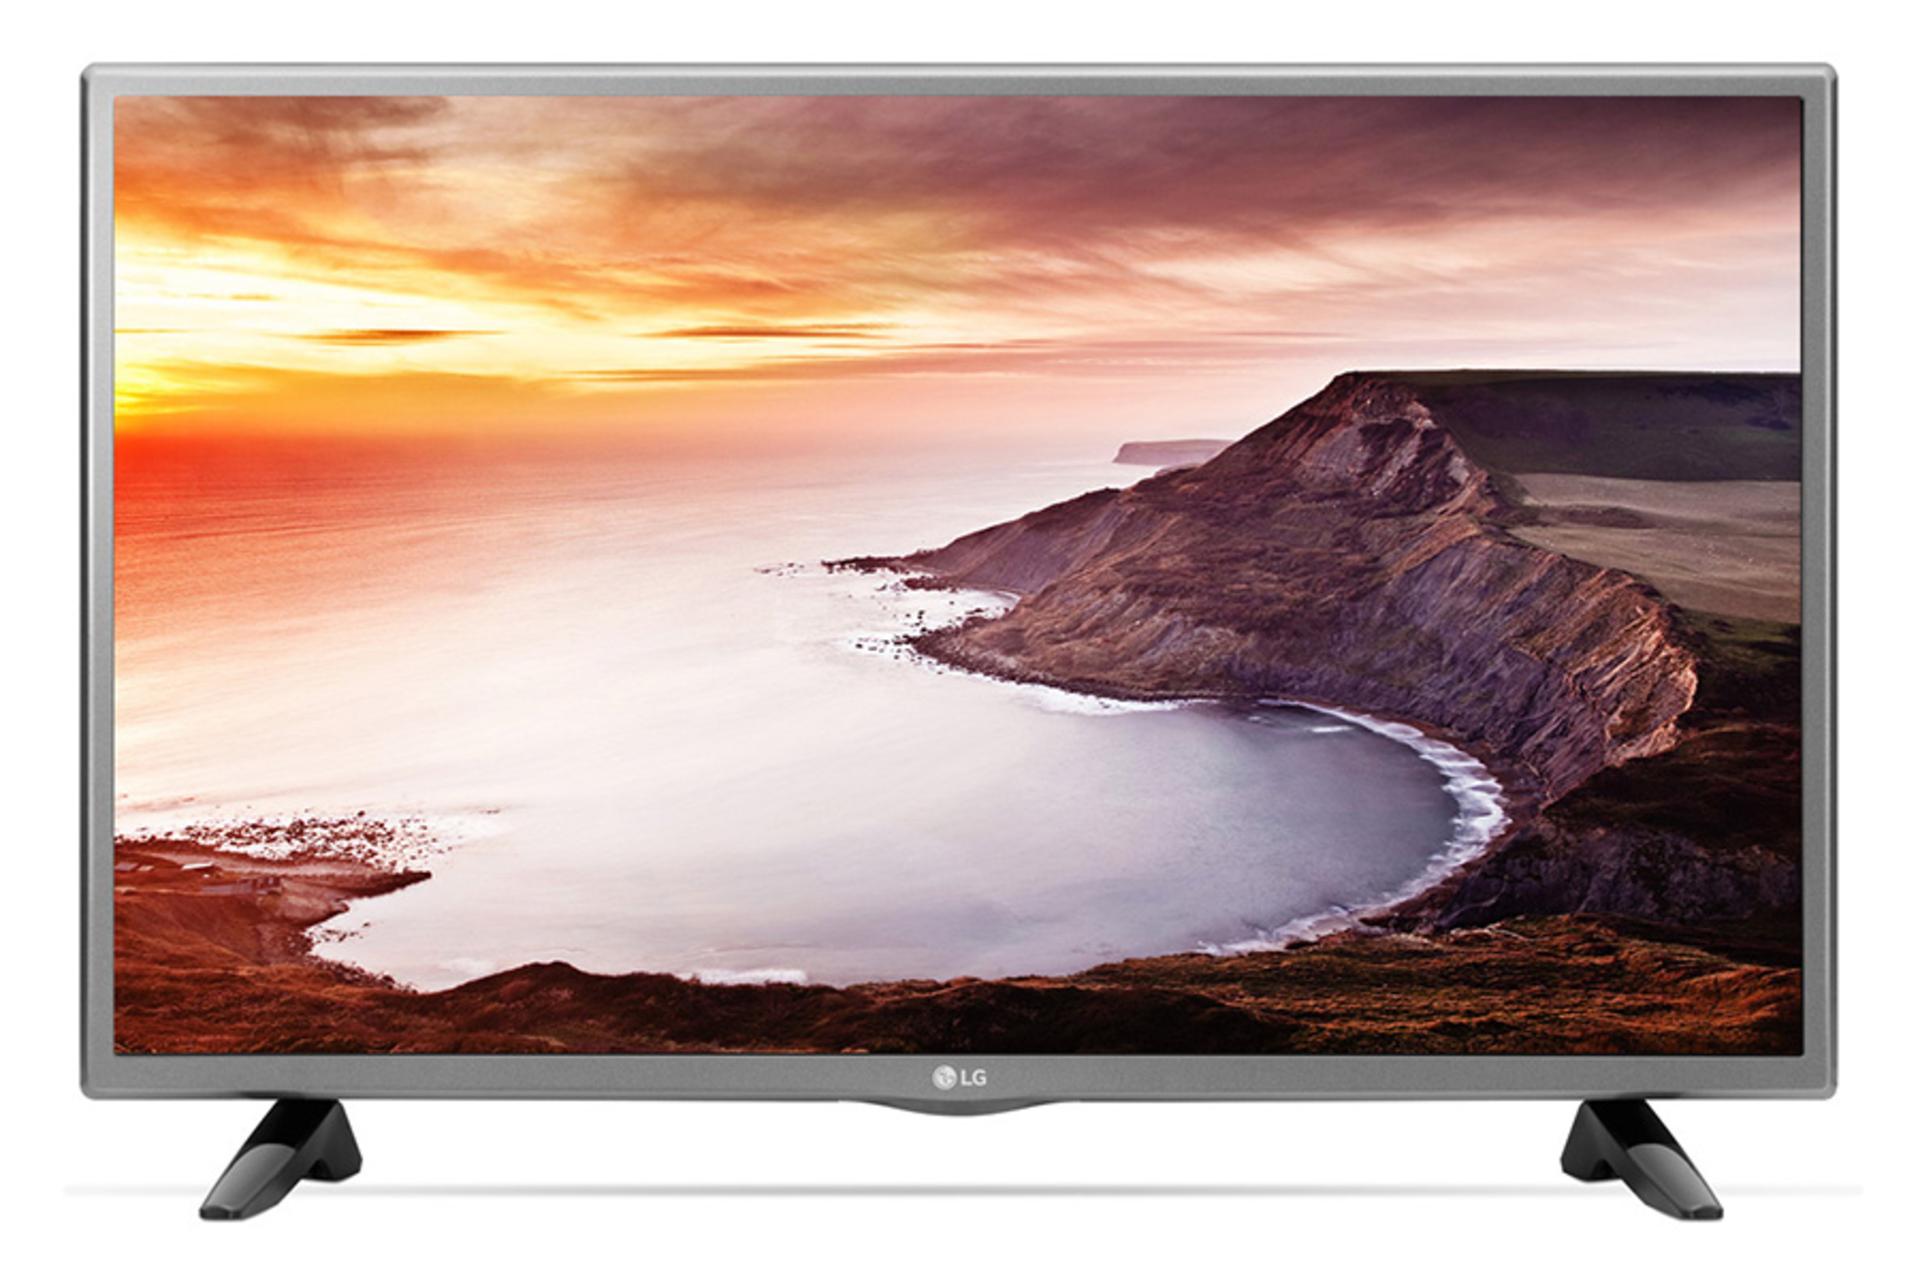 نمای جلو تلویزیون LF510D مدل 32 اینچ با صفحه روشن